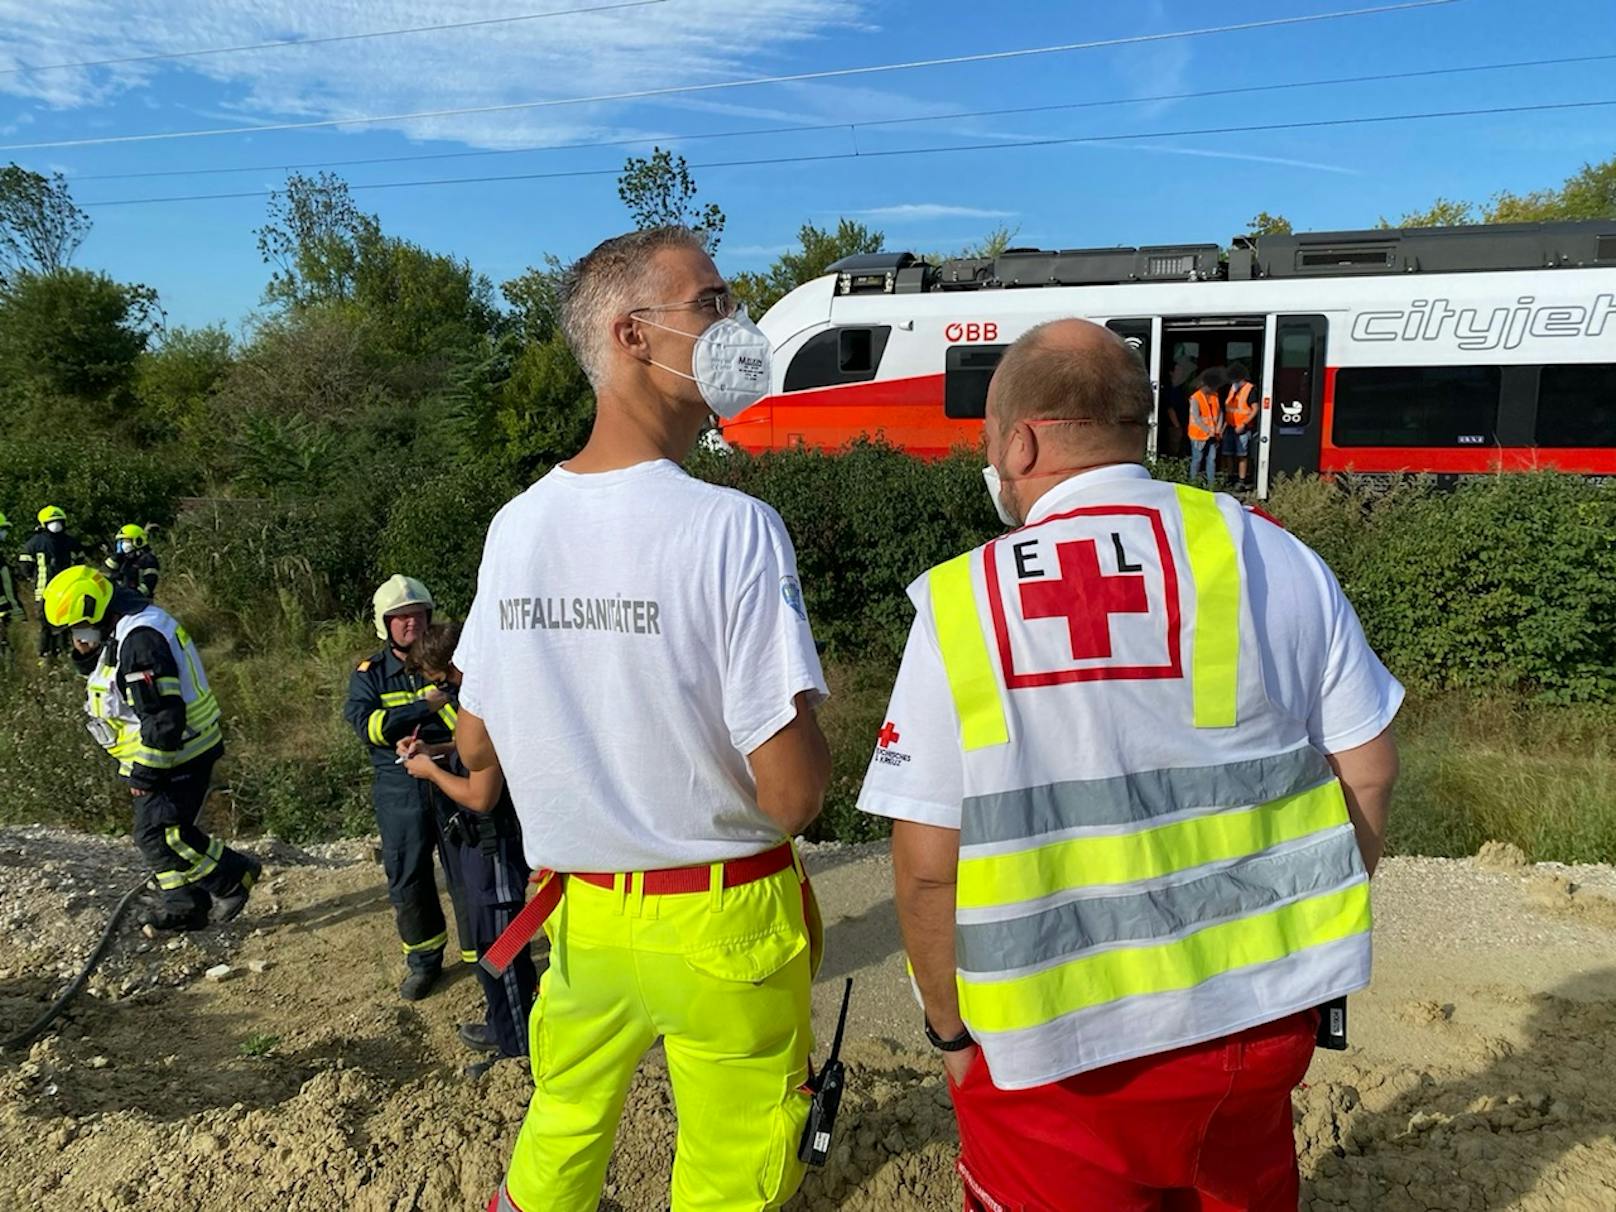 Bilder der Unfallstelle und Einsatzkräfte nach der tödlichen Zug-Kollision in Trumau (27. August 2020)